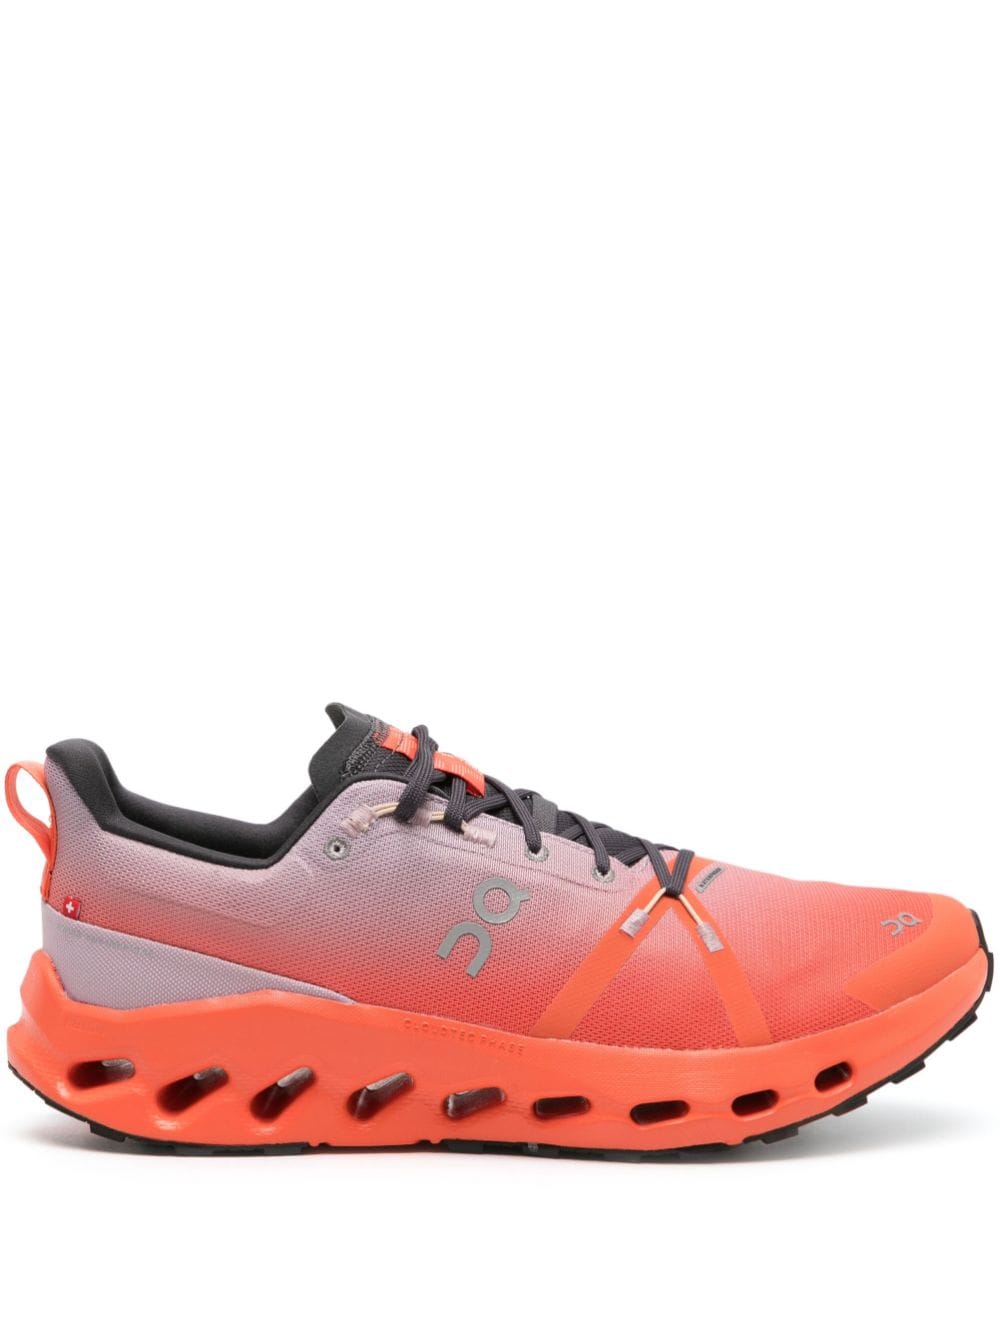 Image 1 of On Running Cloudsurfer waterproof trail sneakers